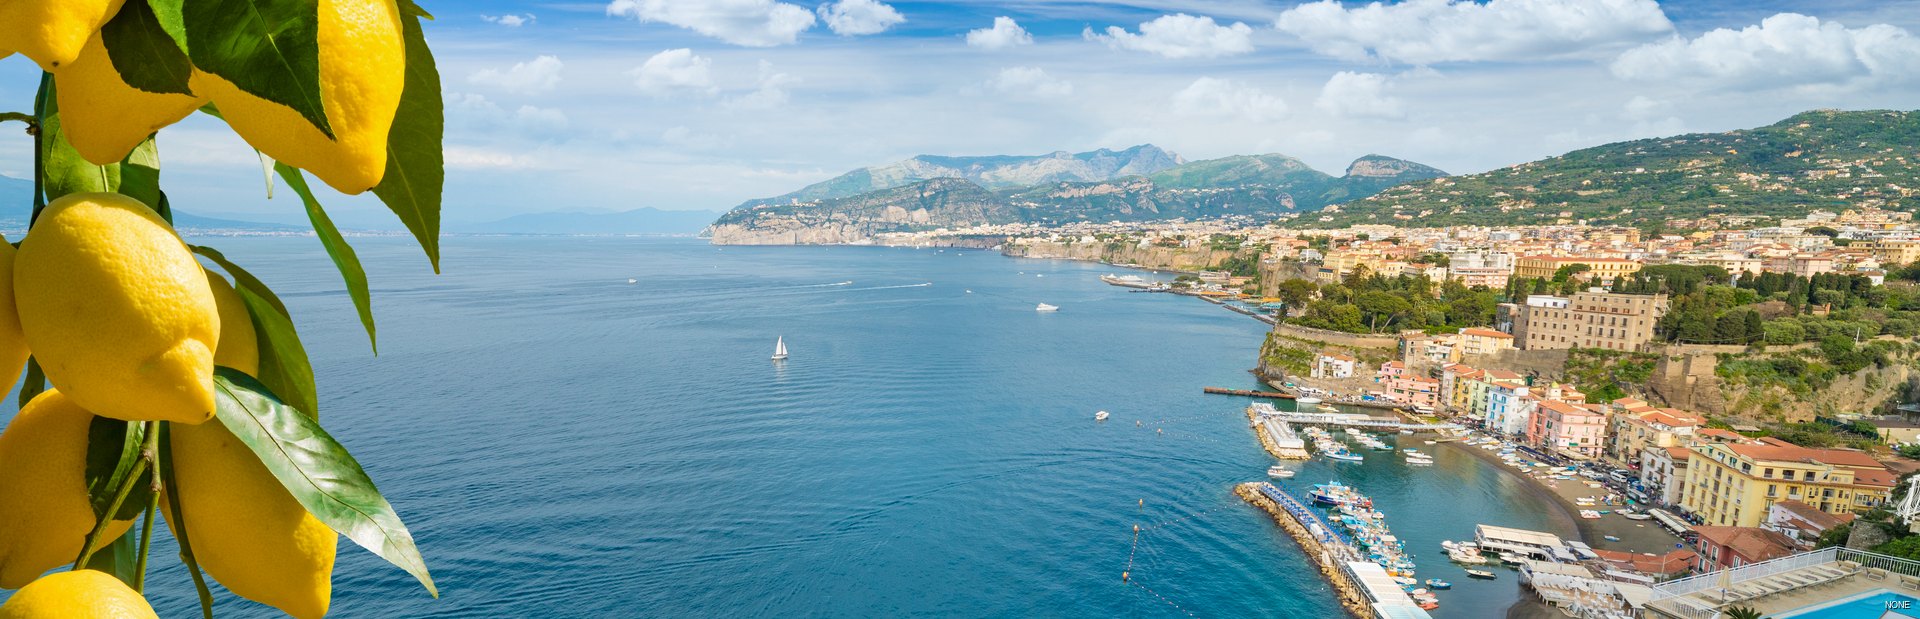 Amalfi climate photo